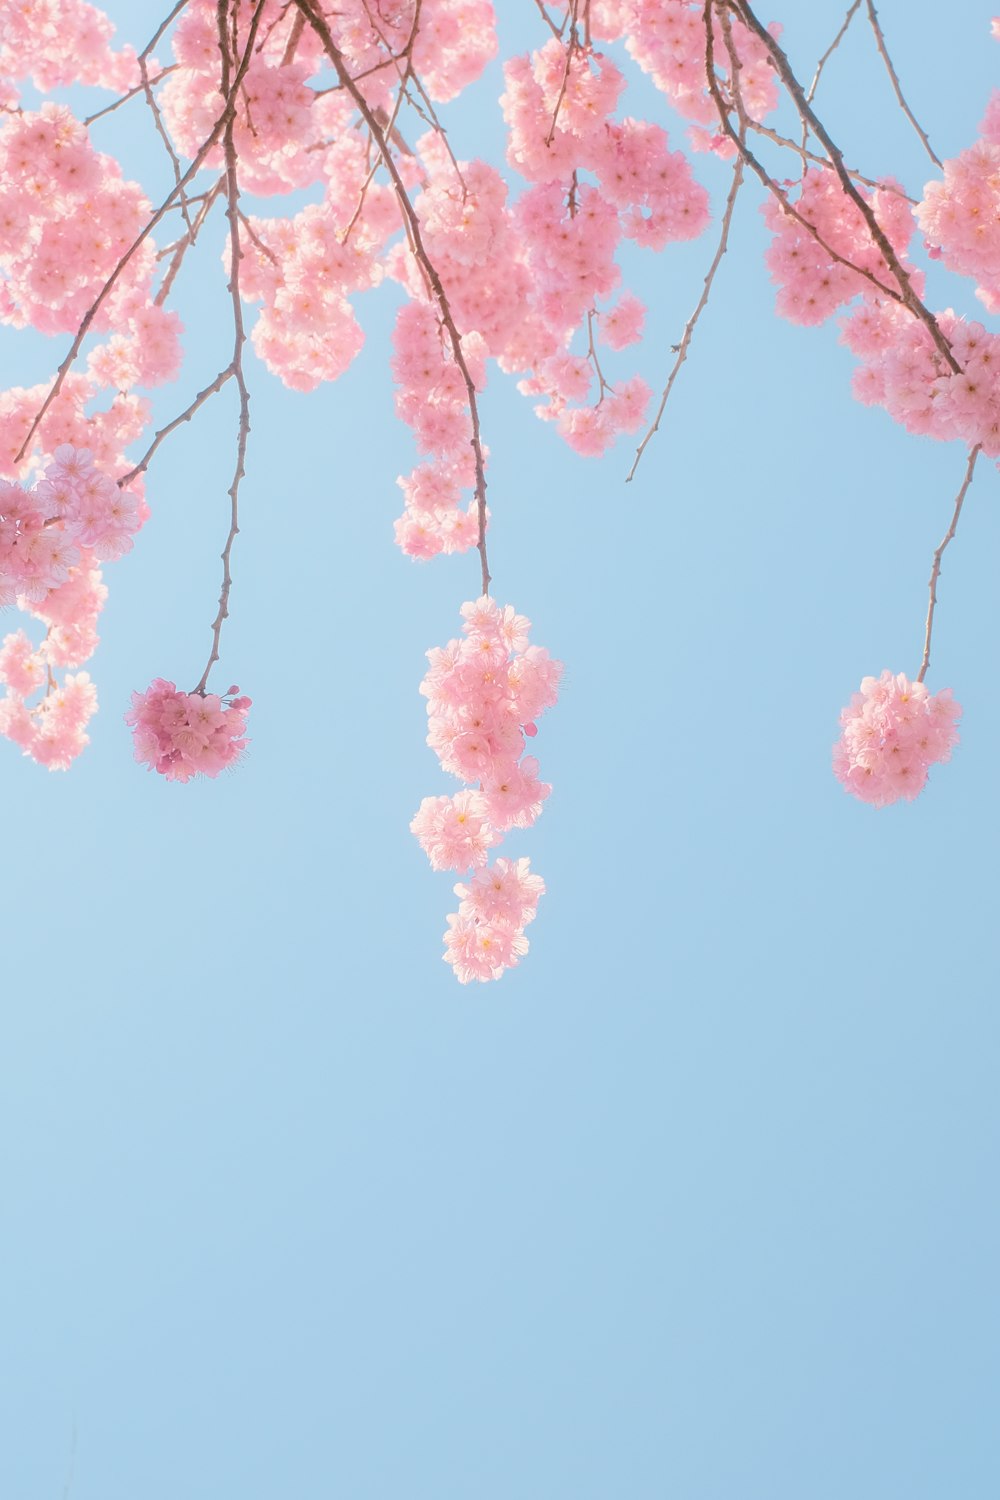 cerezo rosa en flor bajo el cielo azul